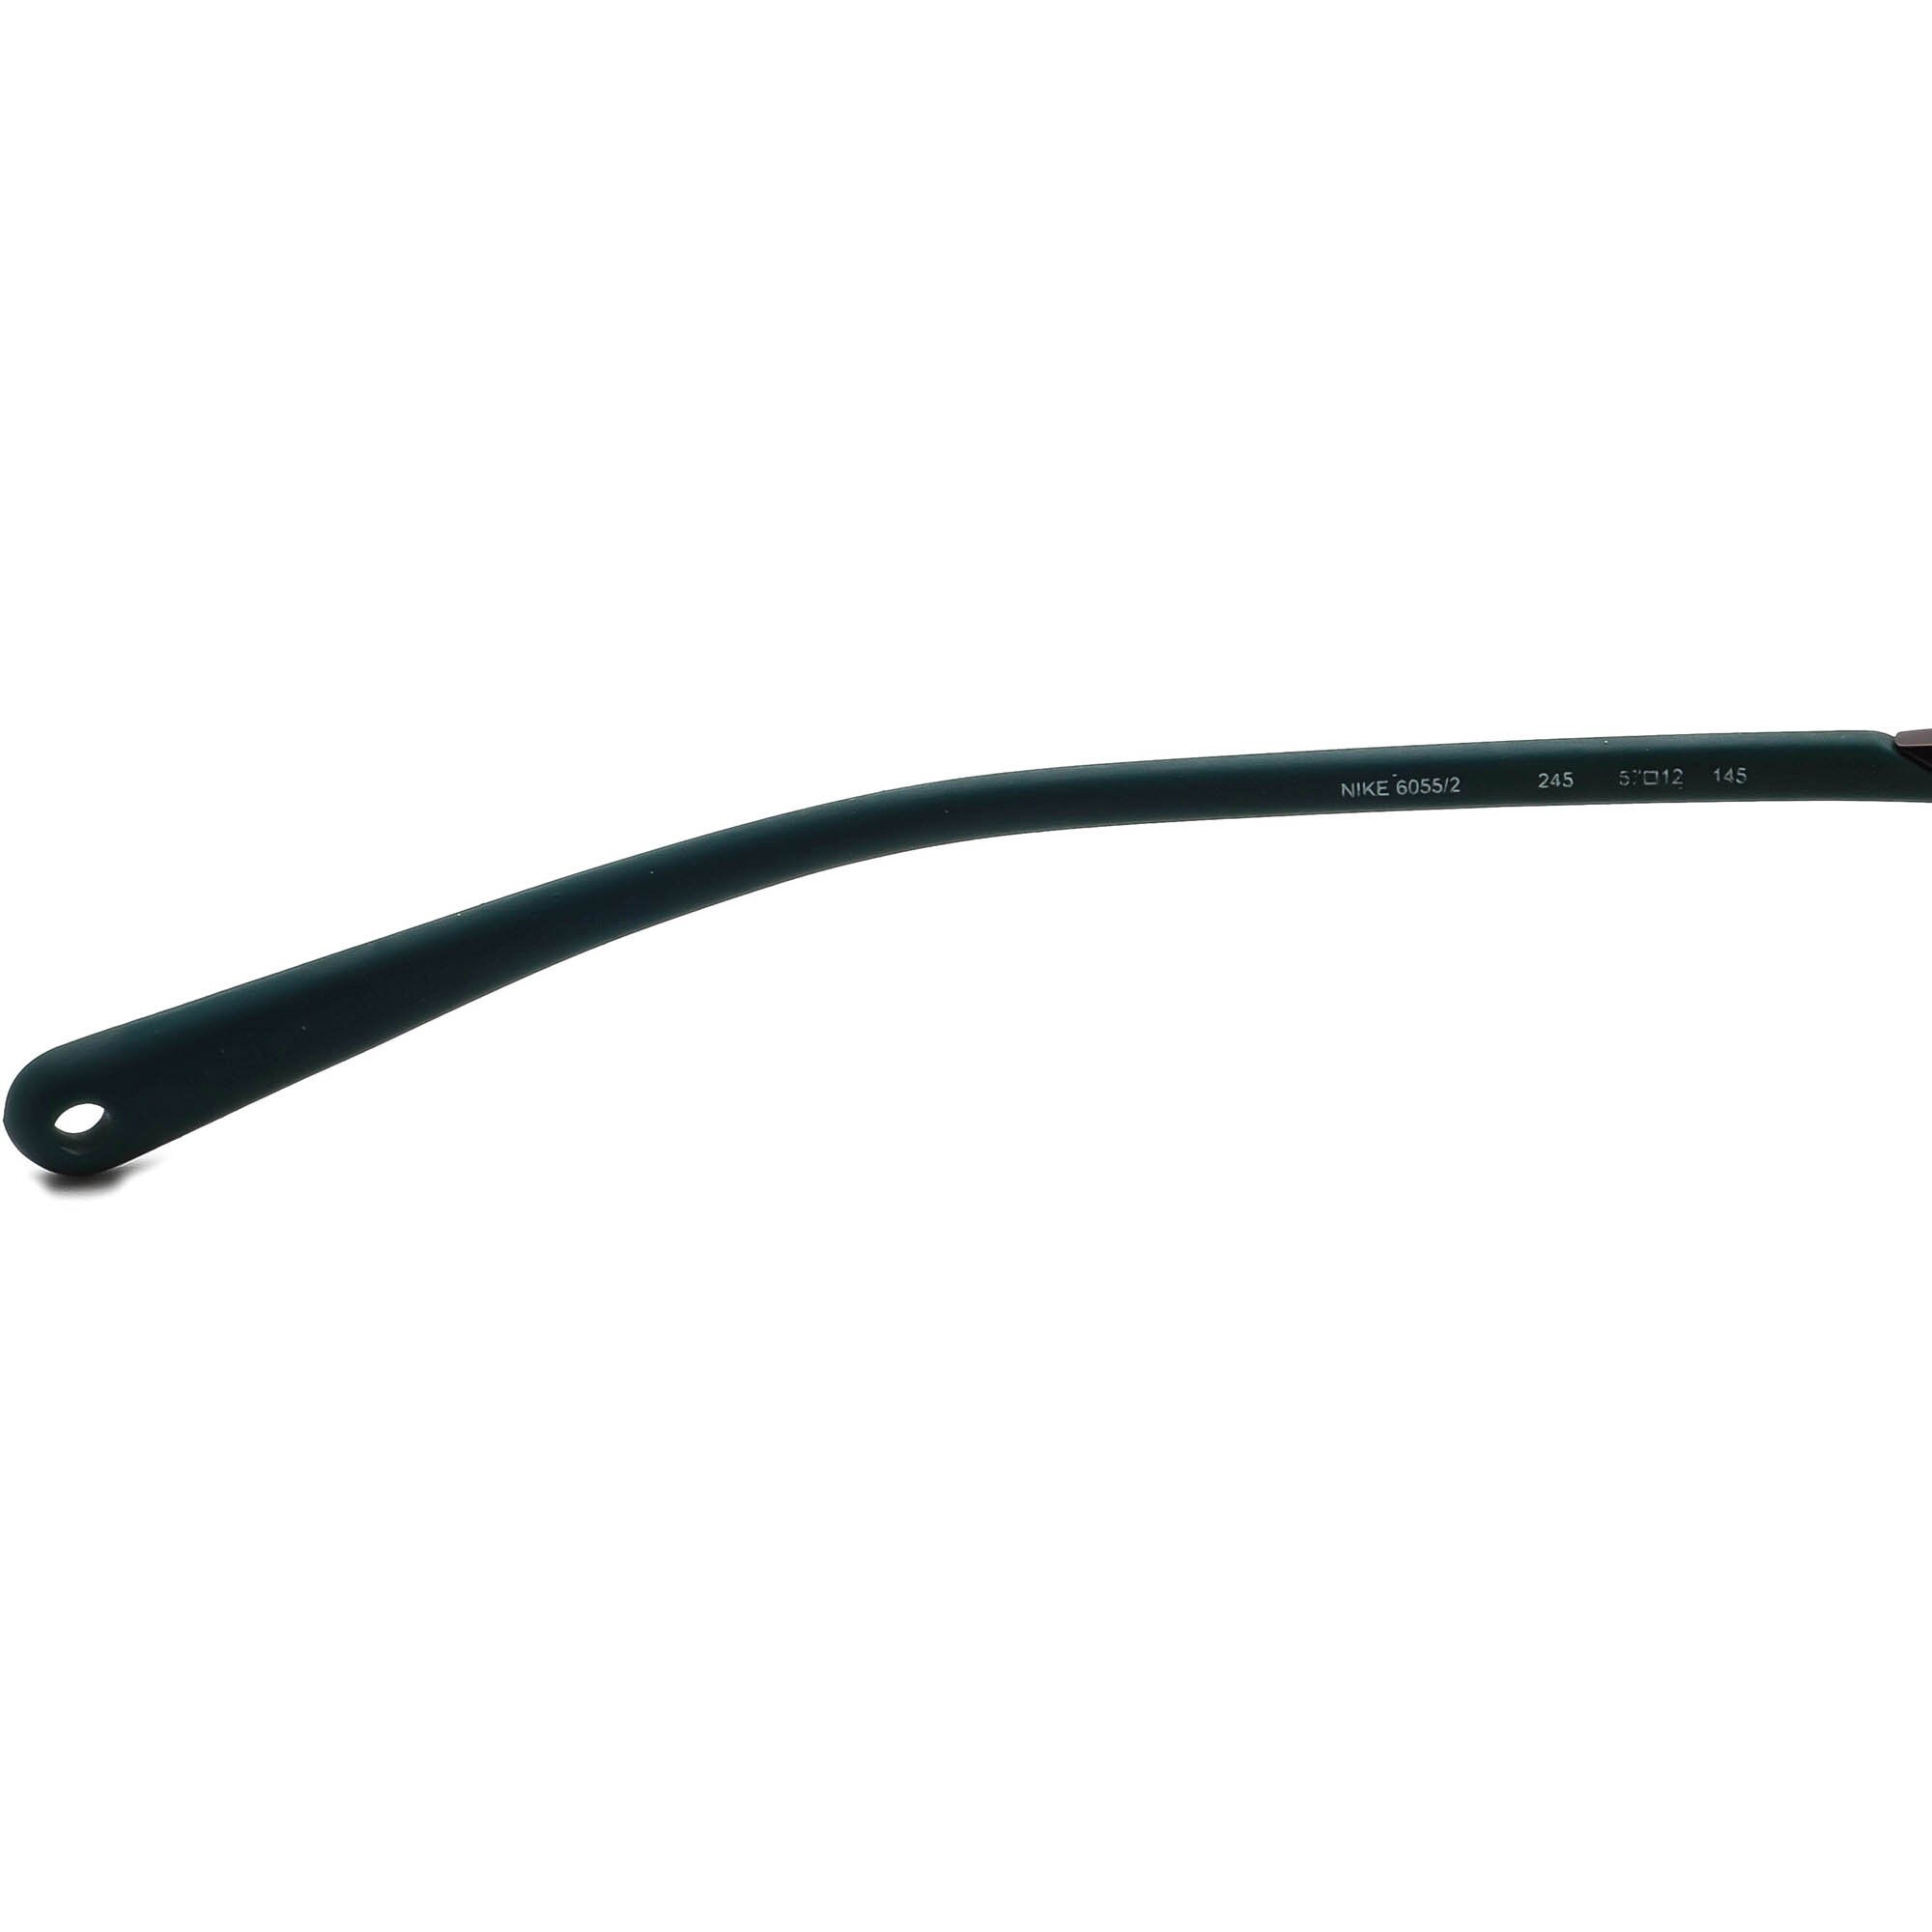 Lubricar Pico Paquete o empaquetar Nike Eyeglasses 6055/2 245 Titanium Brown/green Half Rim Frame - Etsy Hong  Kong